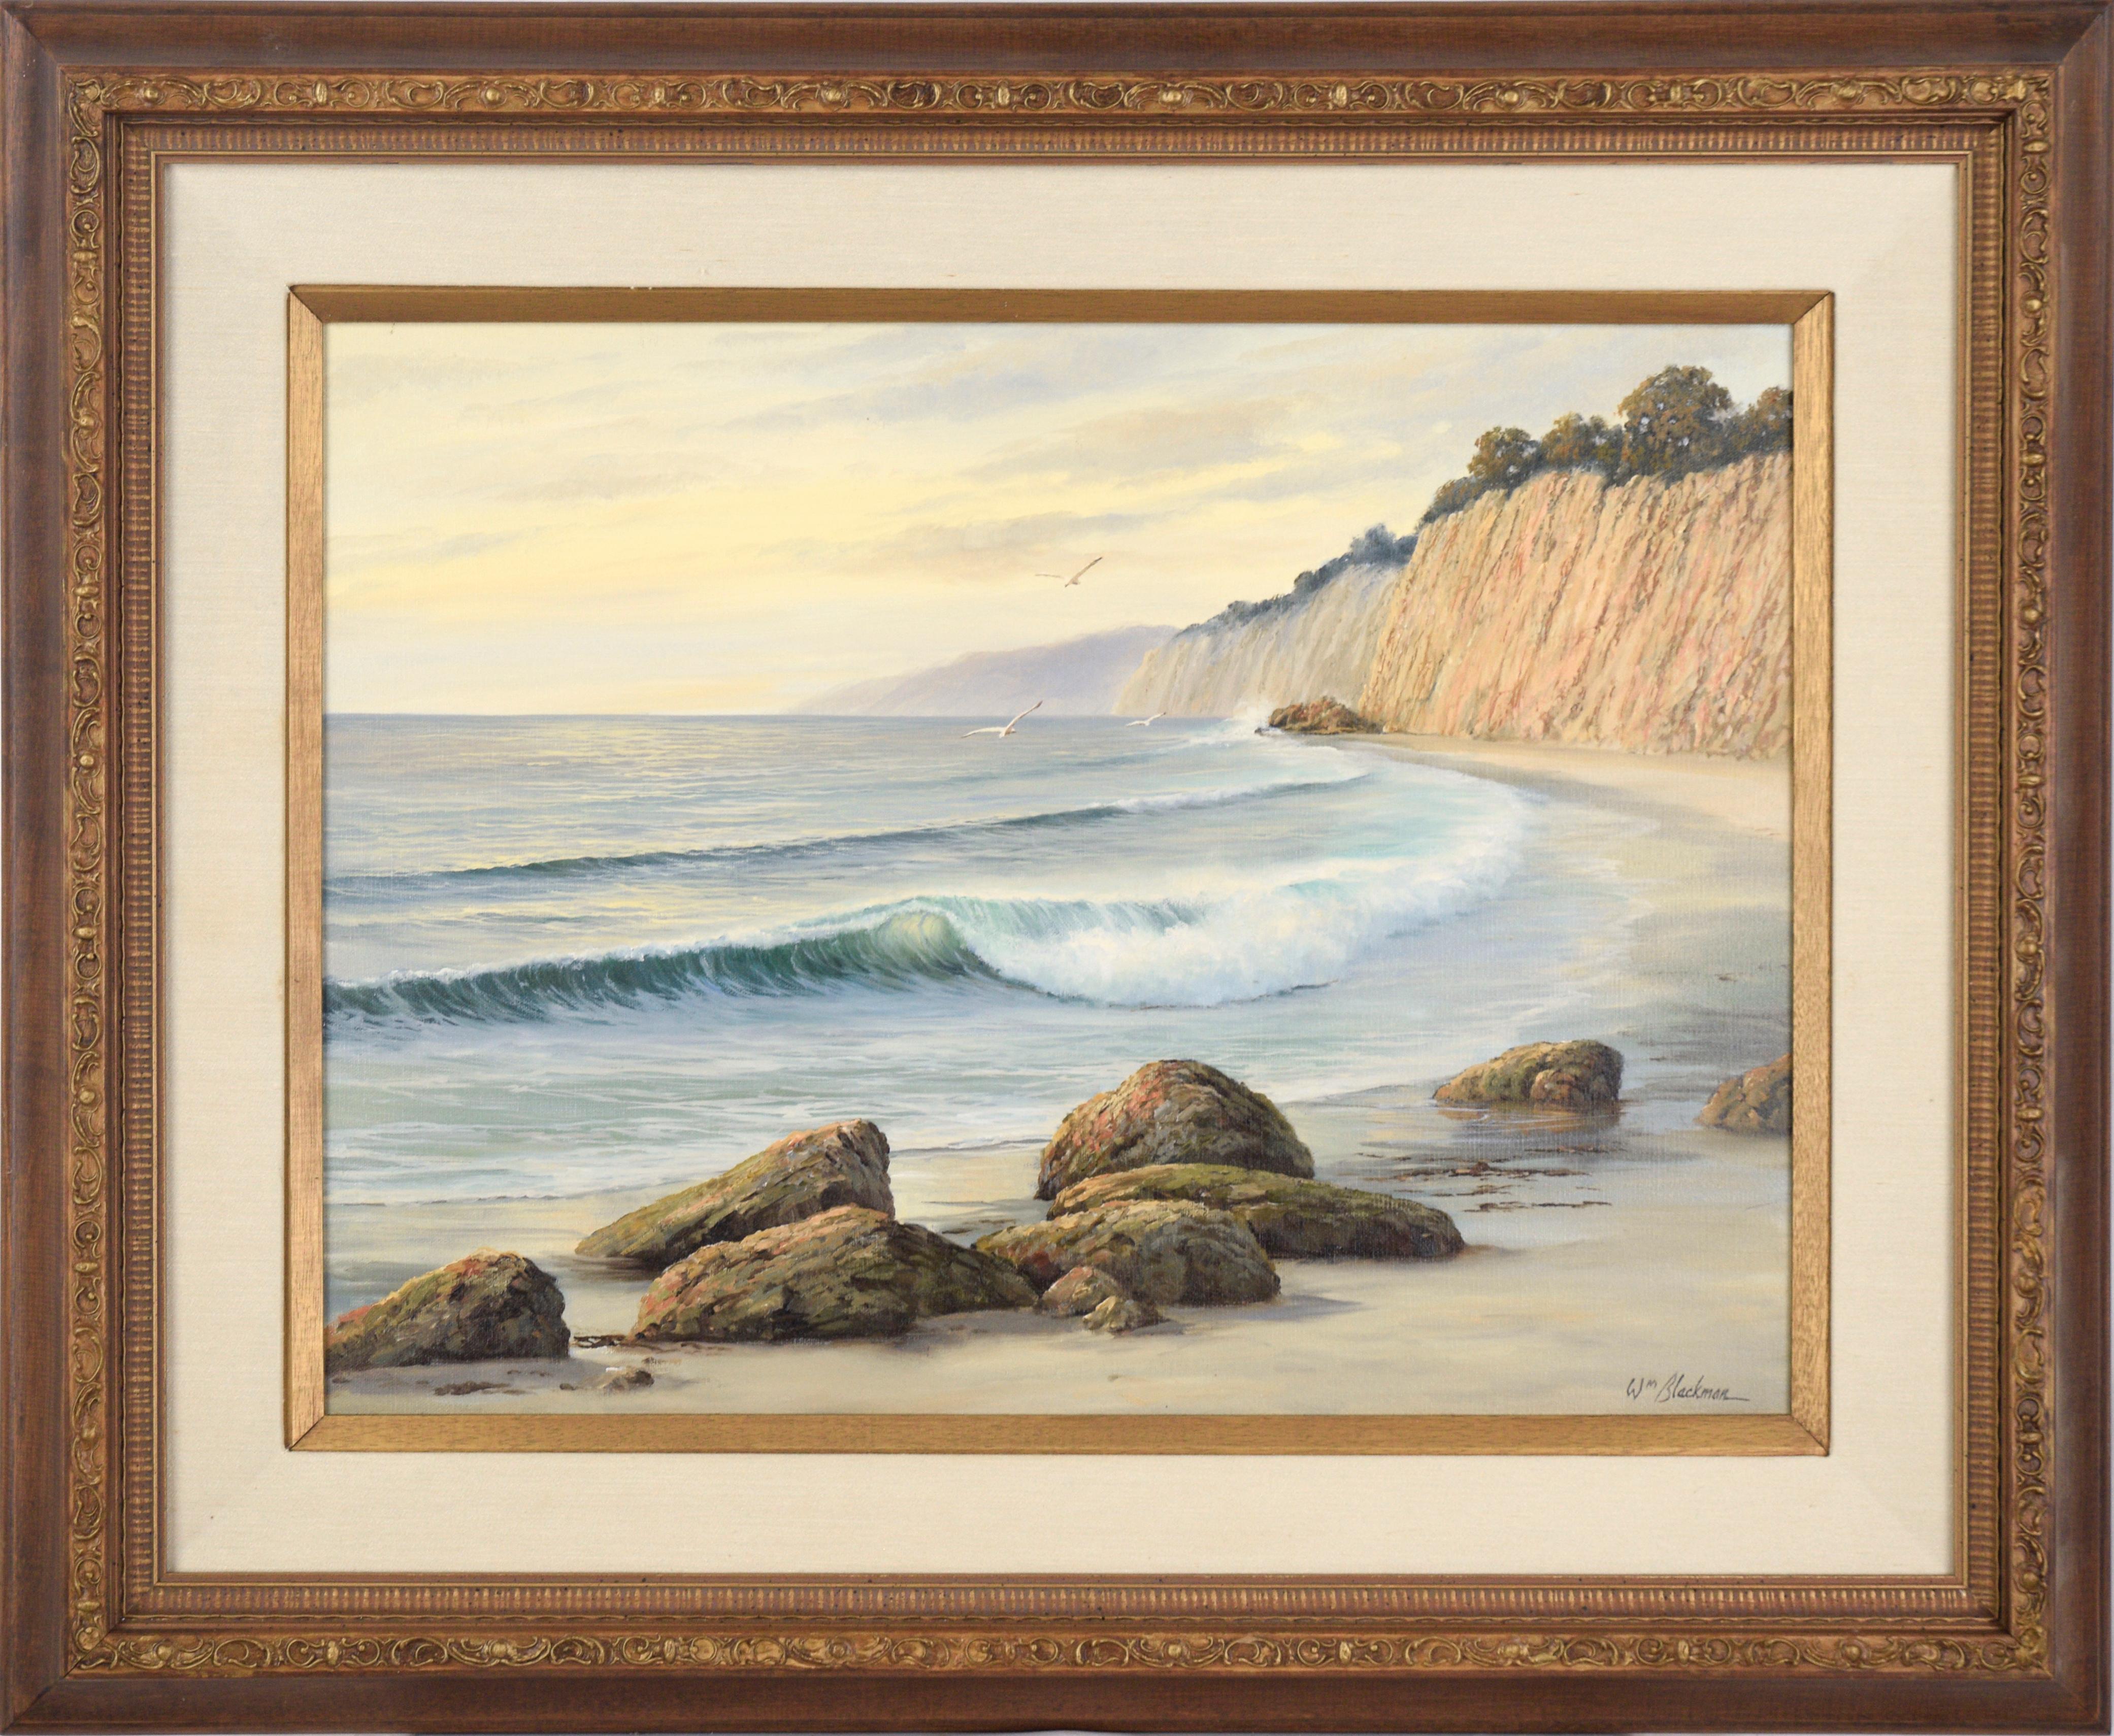 Landscape Painting William Henry Blackman - La vague ondulante à la côte - Paysage marin